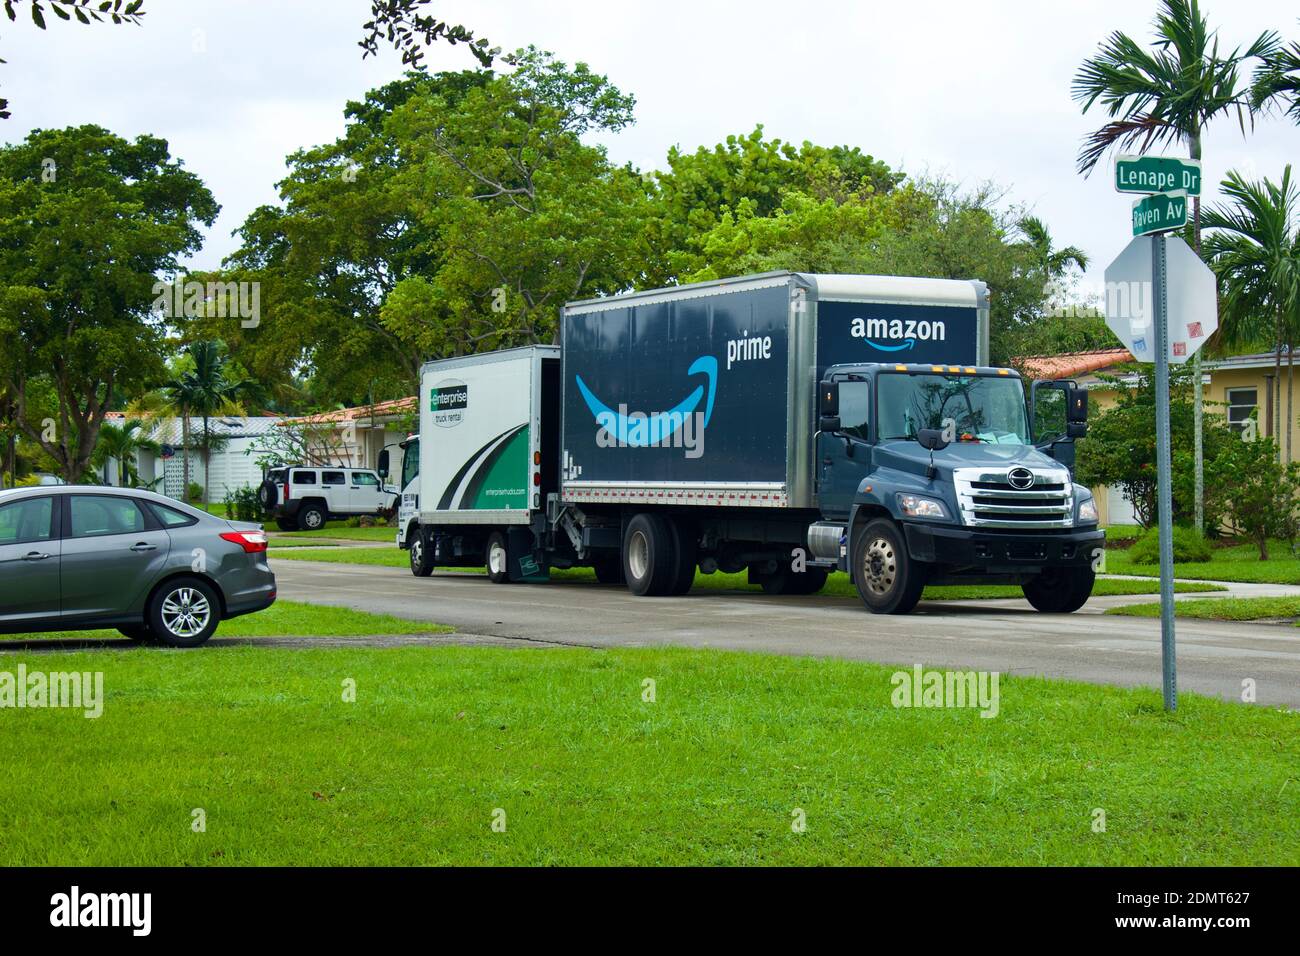 11/7/2020 Miami Florida EE.UU. Amazon Prime entrega de vehículos para en el barrio residencial, traslados de paquetes entre camiones Foto de stock